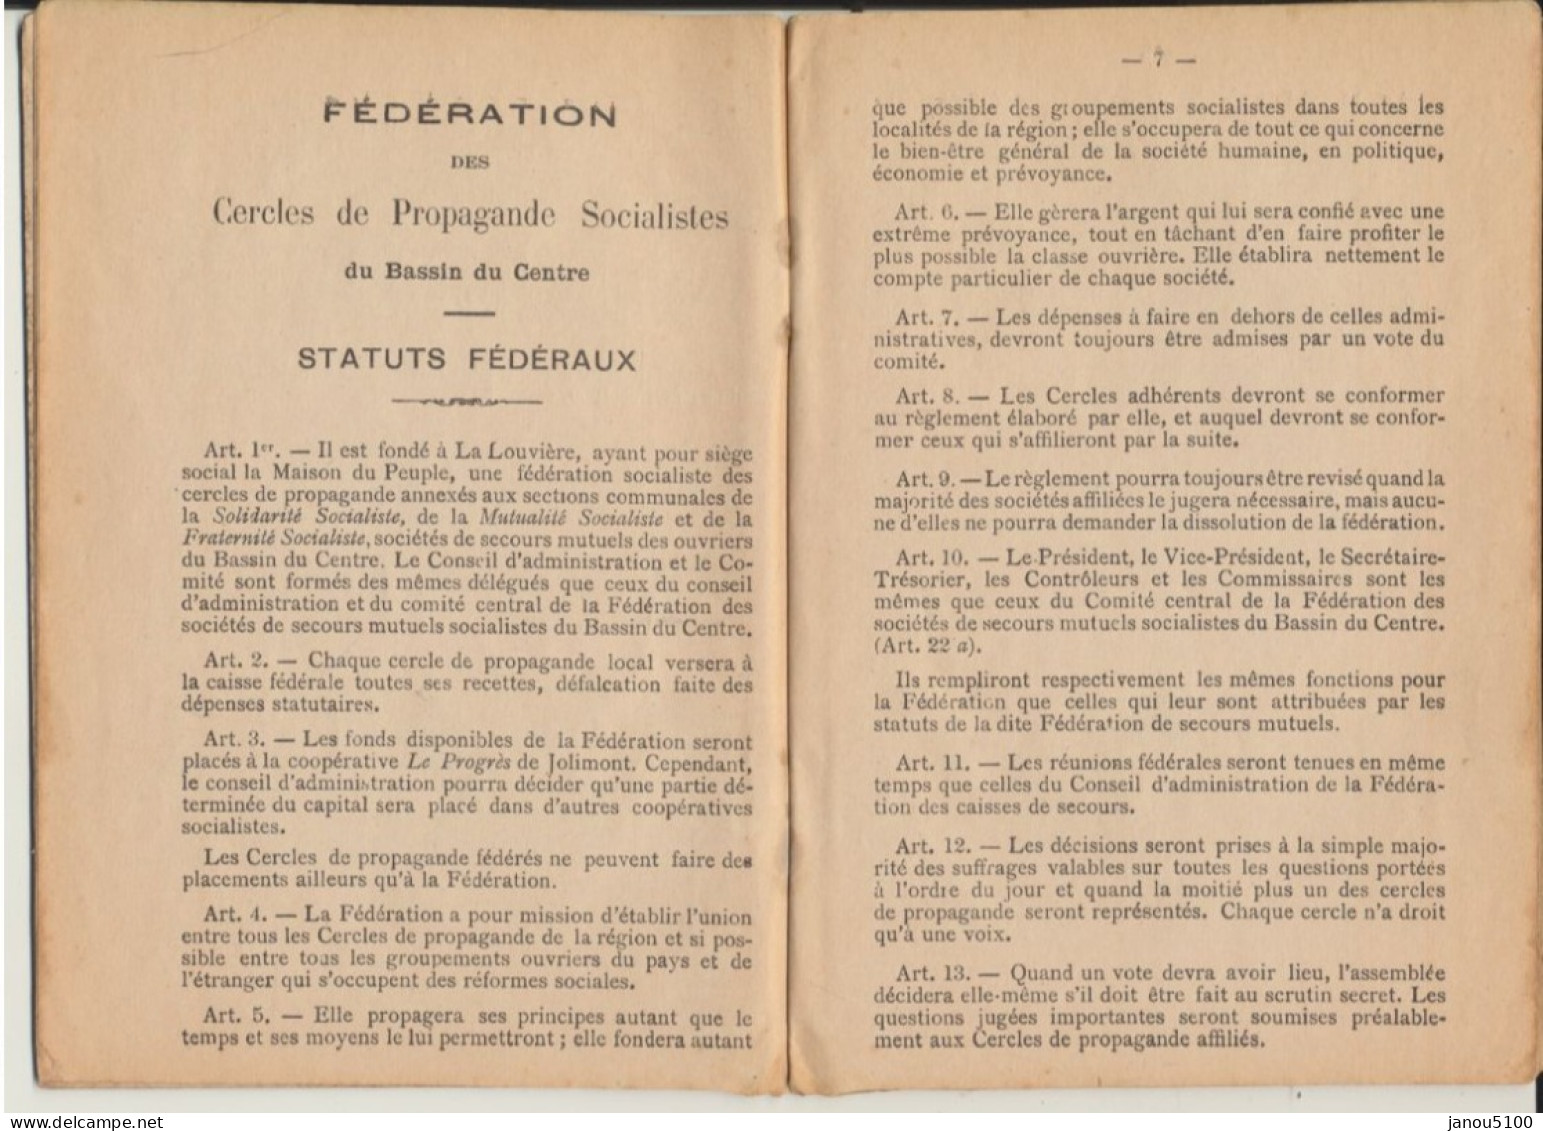 VIEUX PAPIERS   CARNET DE MEMBRE DE LA MUTUELLE SOCIALISTE    1915. - Membership Cards